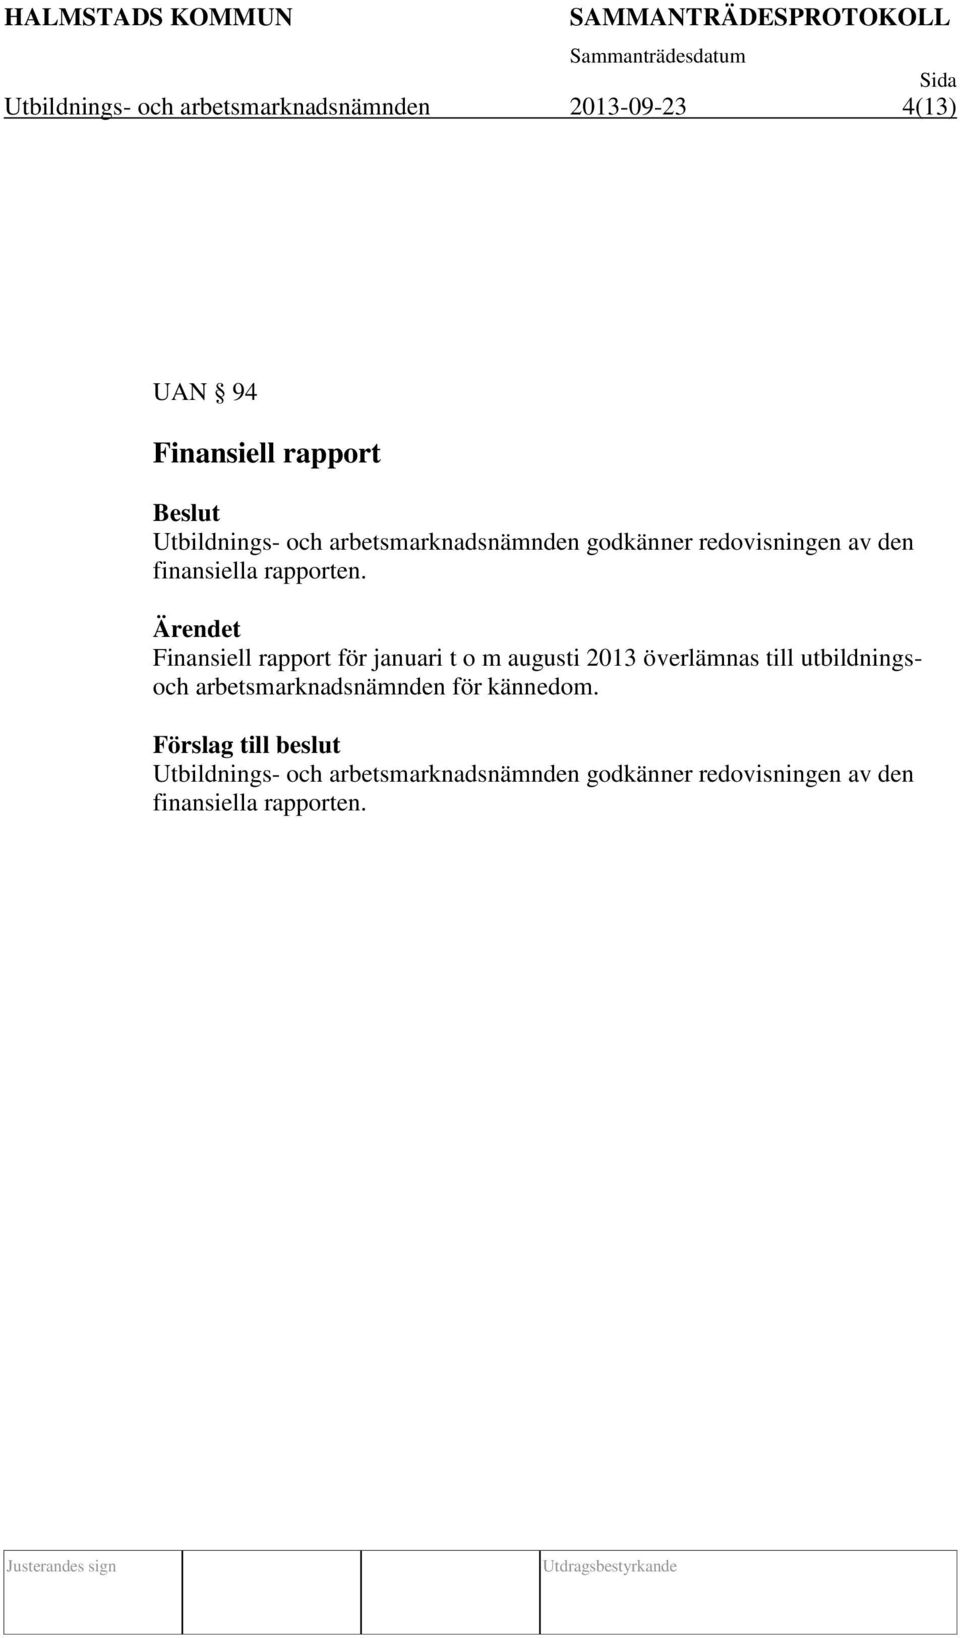 Ärendet Finansiell rapport för januari t o m augusti 2013 överlämnas till utbildningsoch